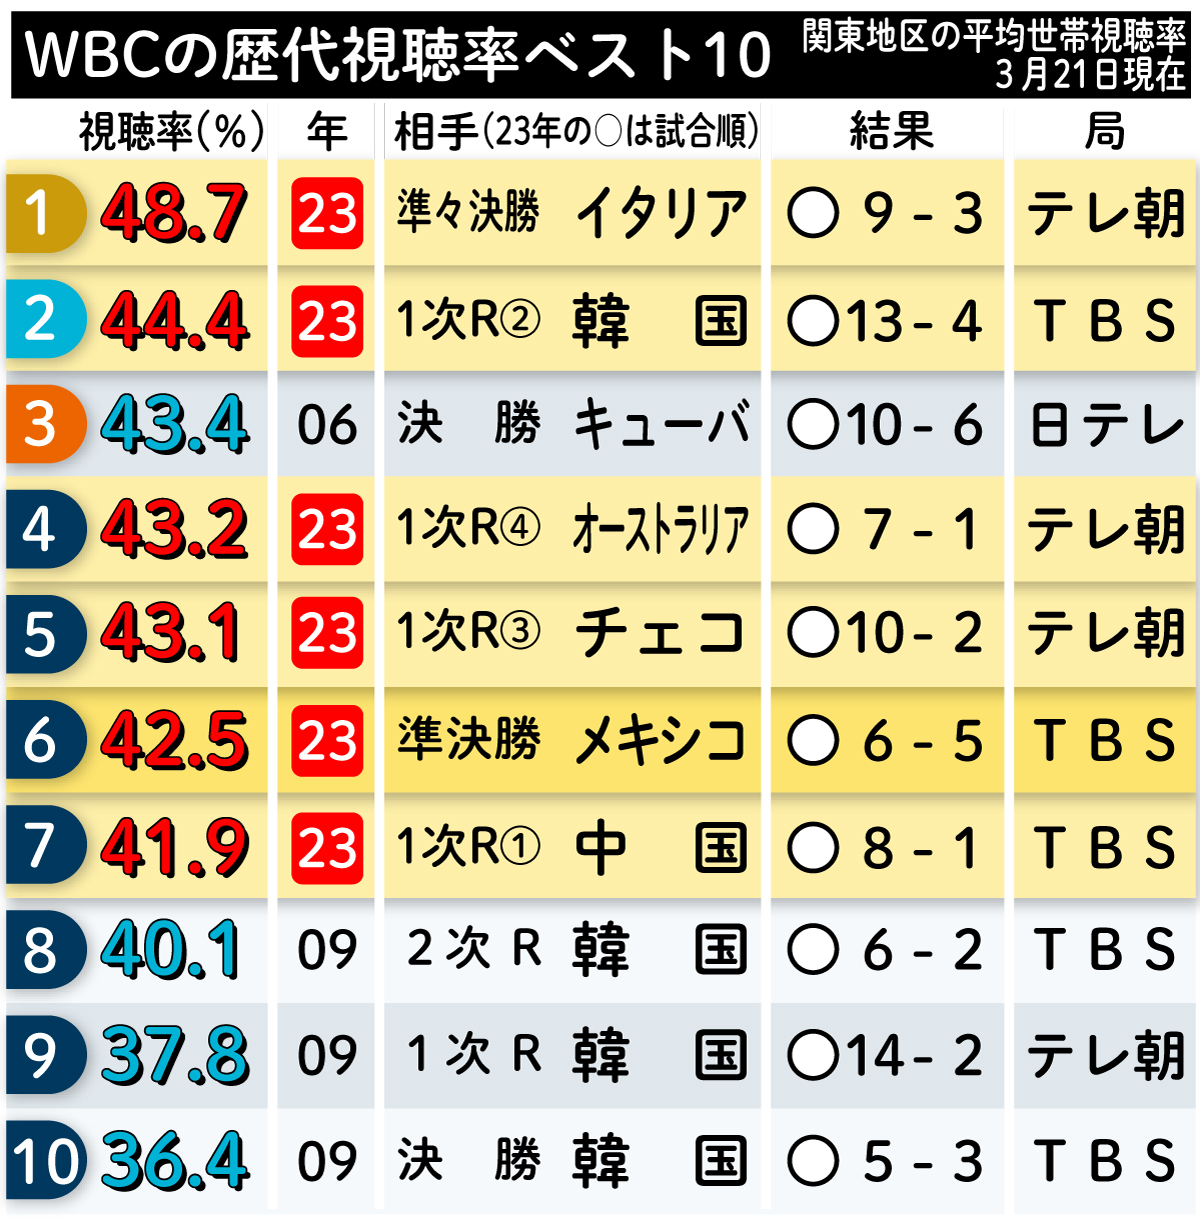 【イラスト】WBCの歴代視聴率ベスト10